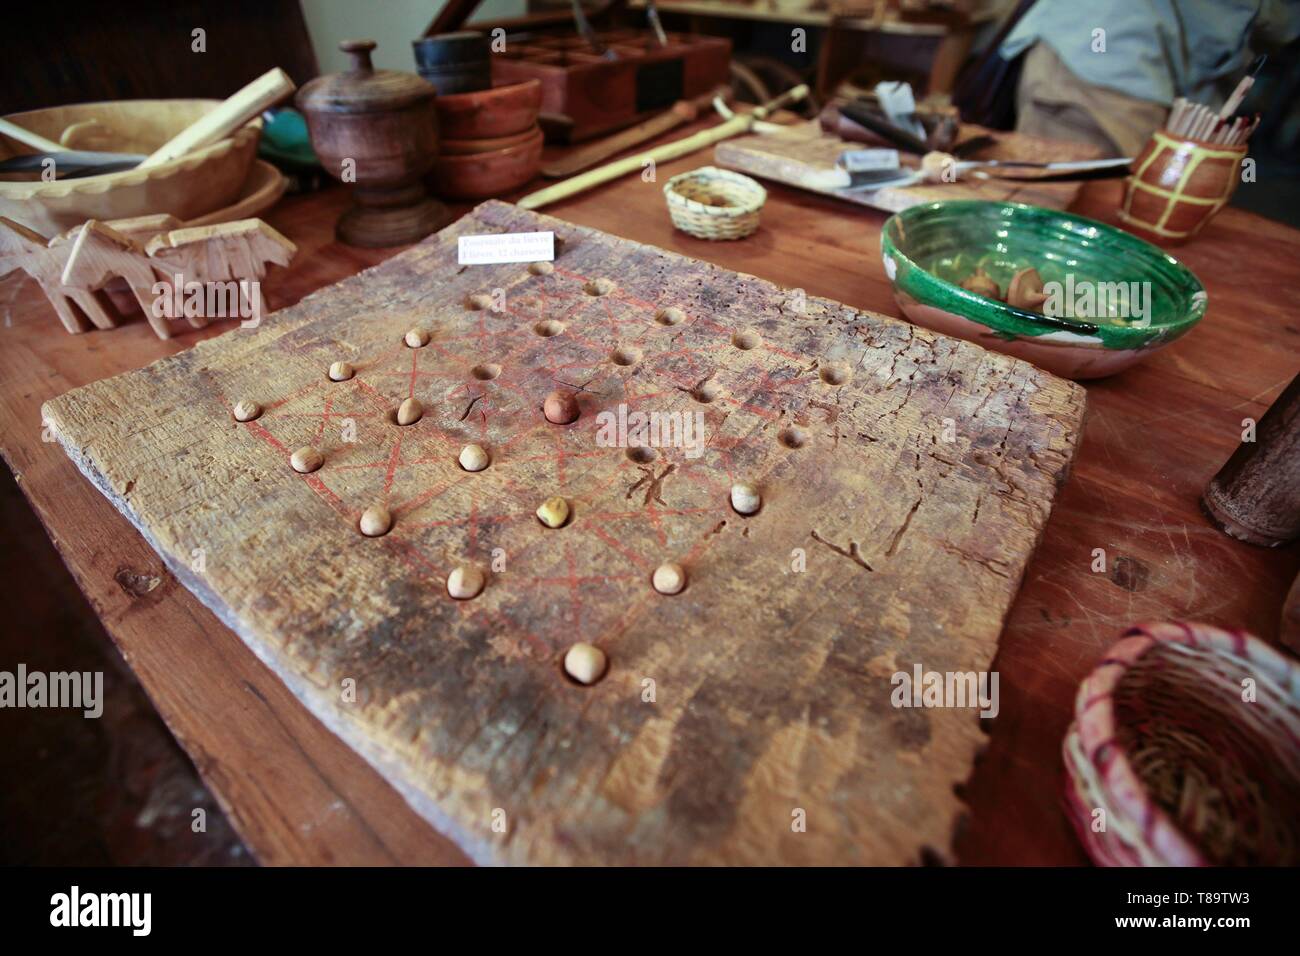 Francia, Saône et Loire, Cluny, medieval juegos encontrados durante las excavaciones en una casa en Cluny Foto de stock